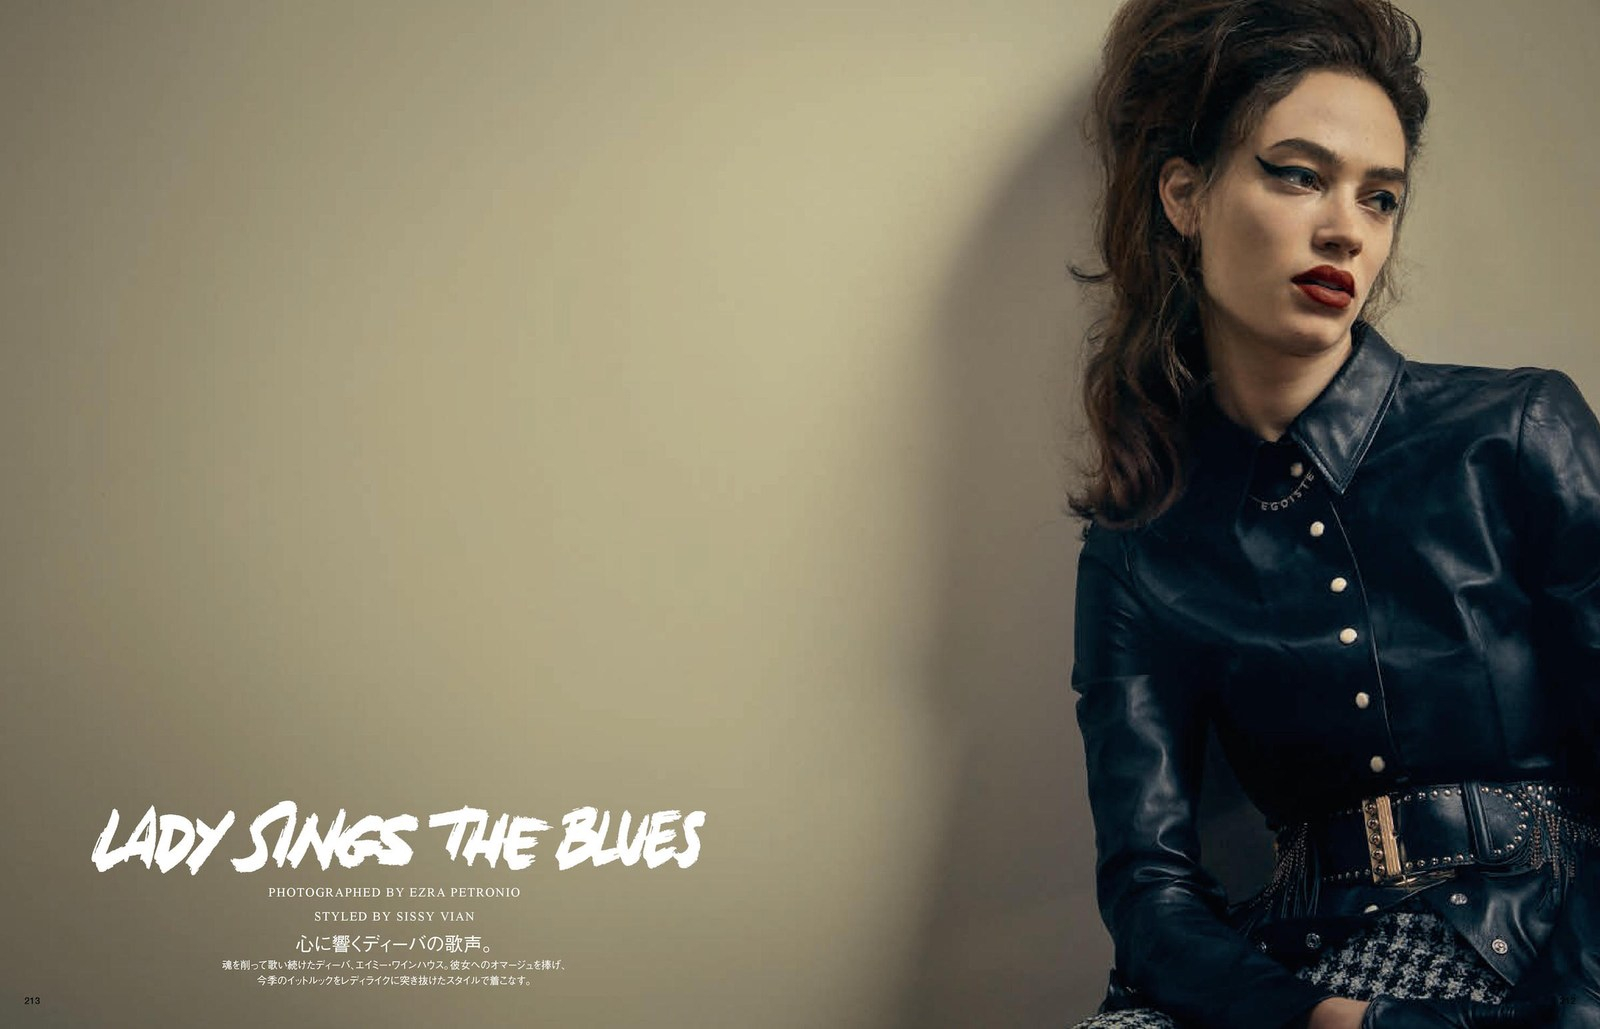 SV_Vogue Japan_Ladys Sings the Blues _4.jpg